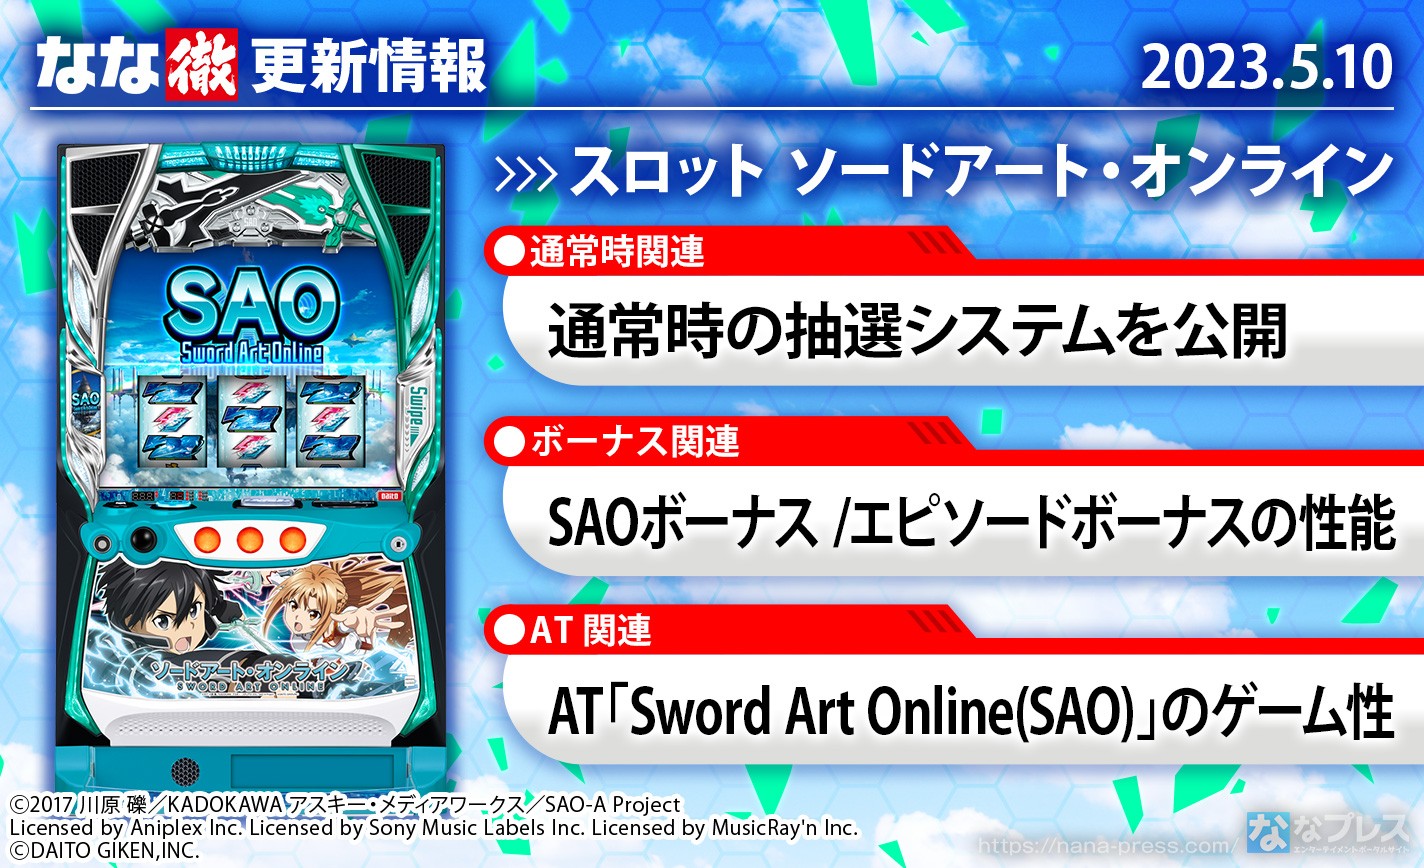 【スロット ソードアート・オンライン】通常時の抽選システム、AT「Sword Art Online(SAO)」のゲーム性などを更新しました。【5月10日解析情報更新】 eyecatch-image